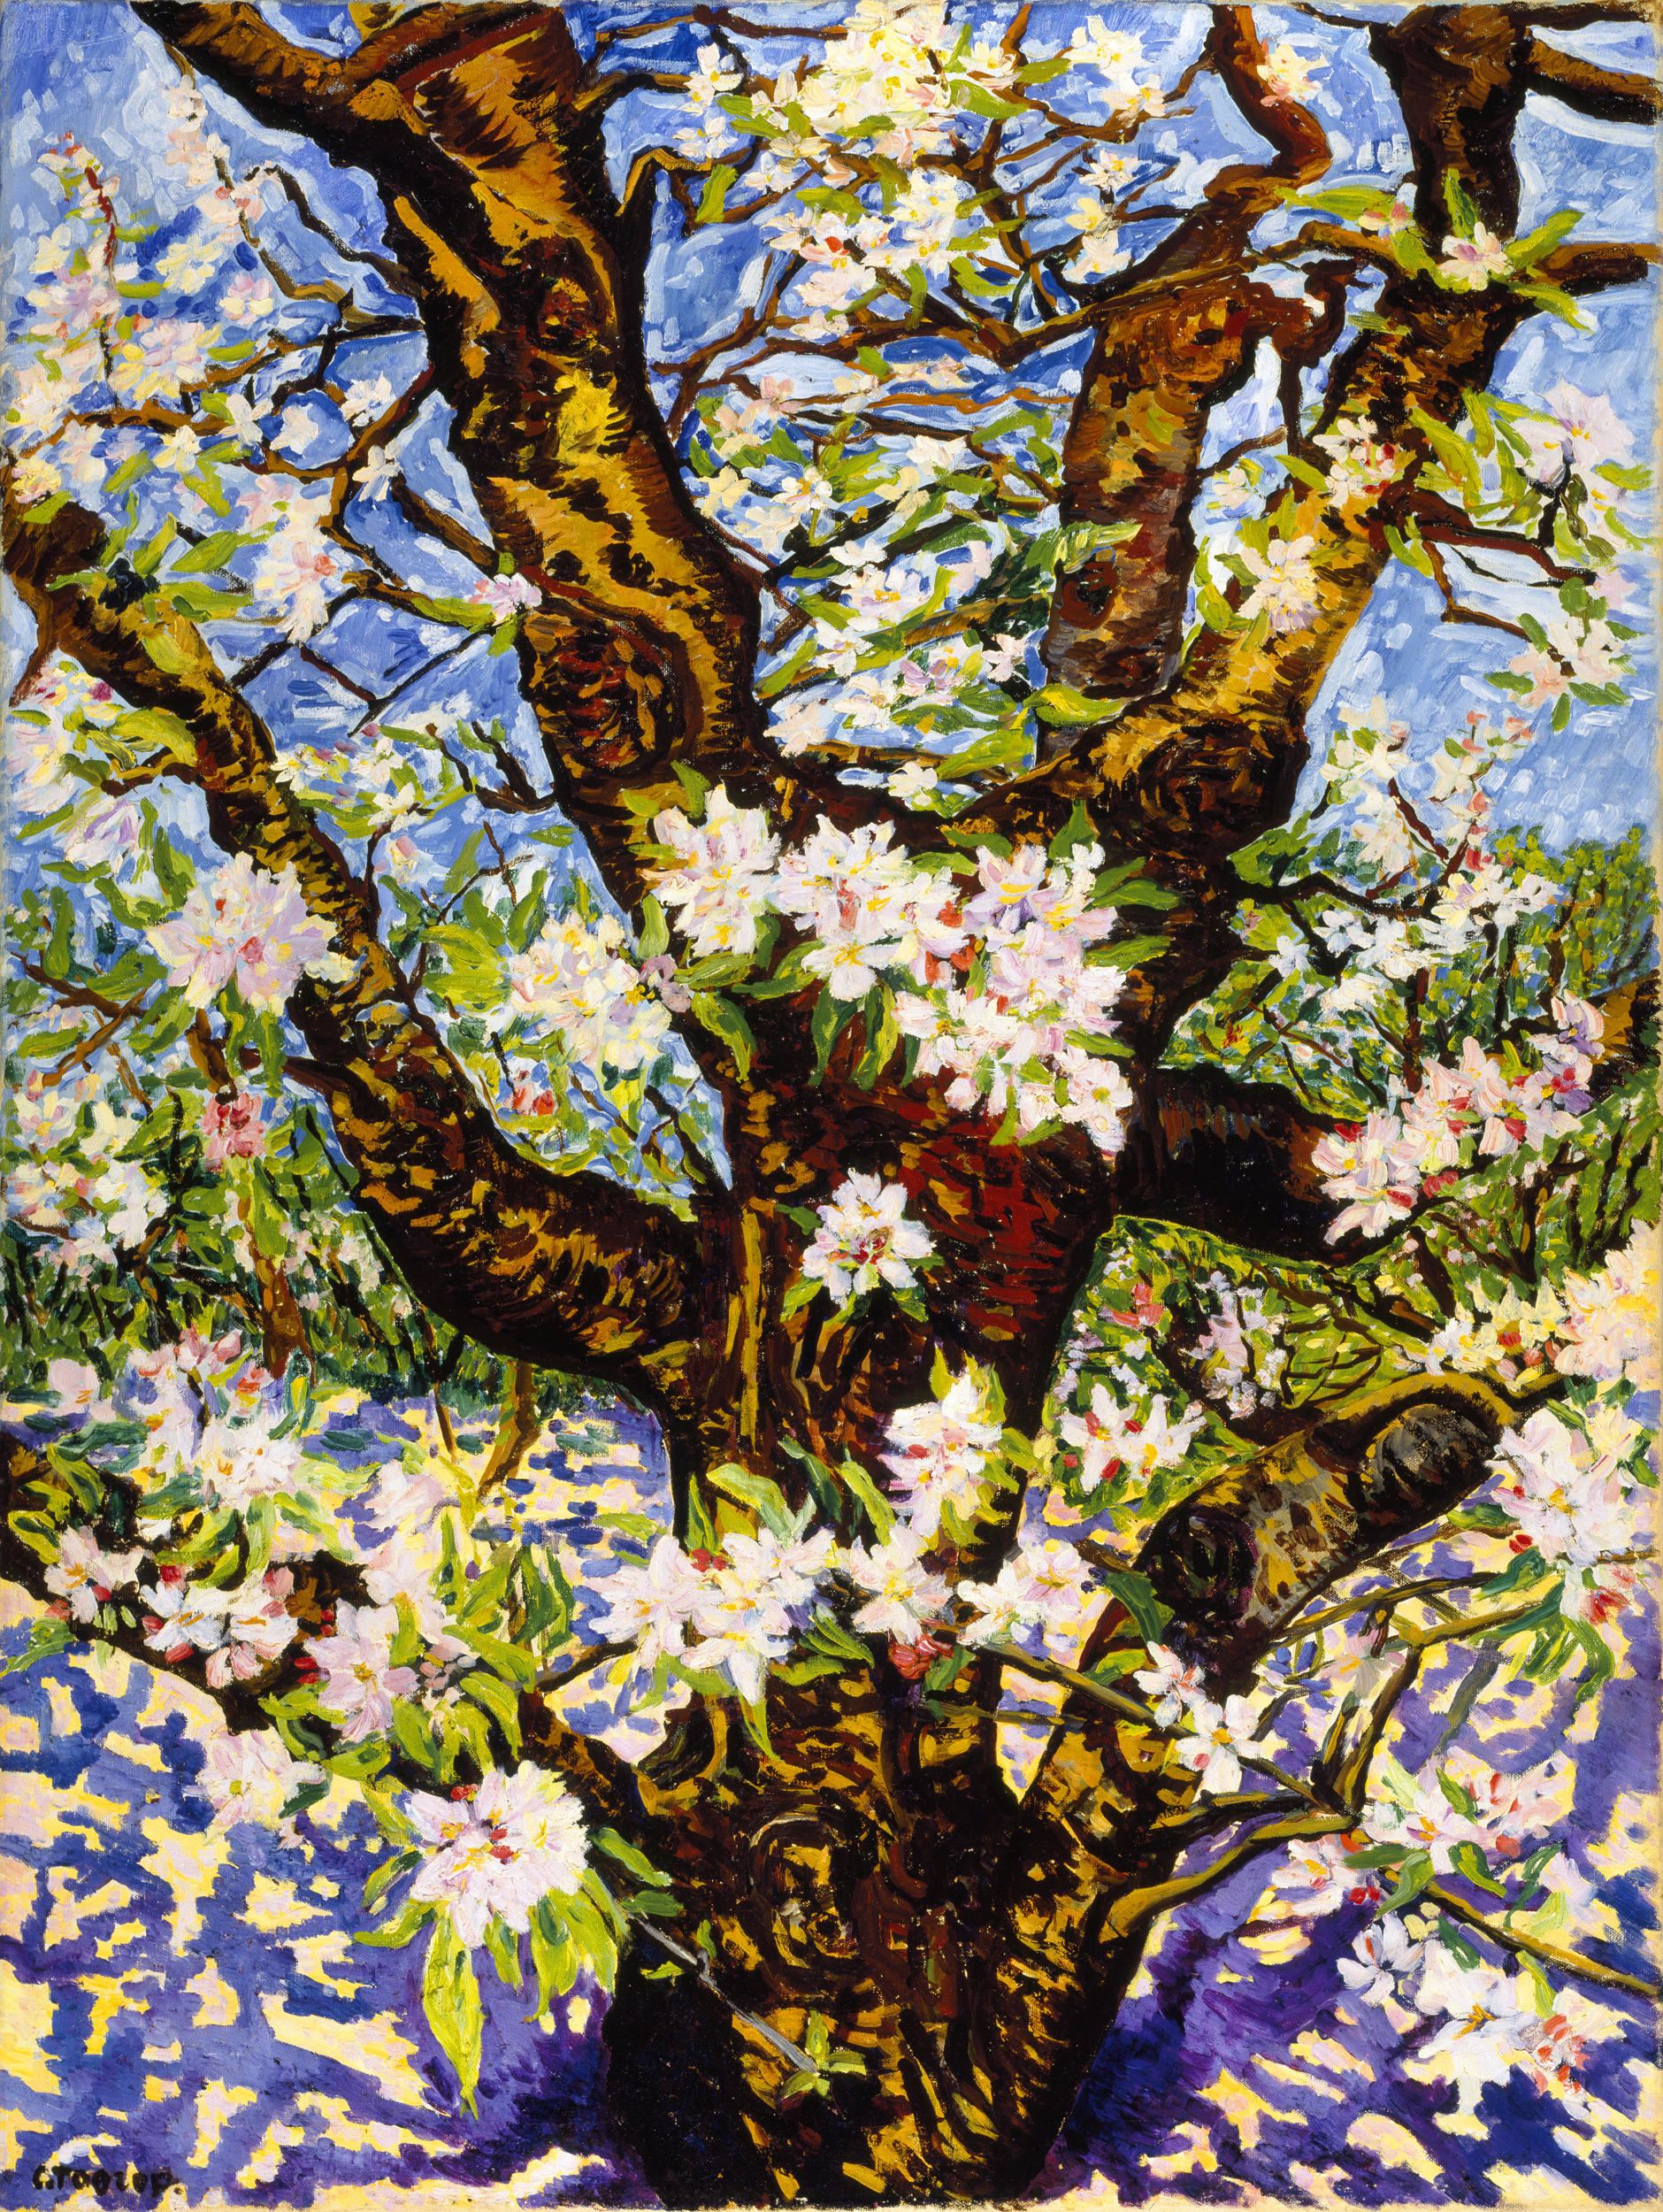 Старо дрво јабуке у цвату by Charley Toorop - 1949. - 120 x 90 cm 